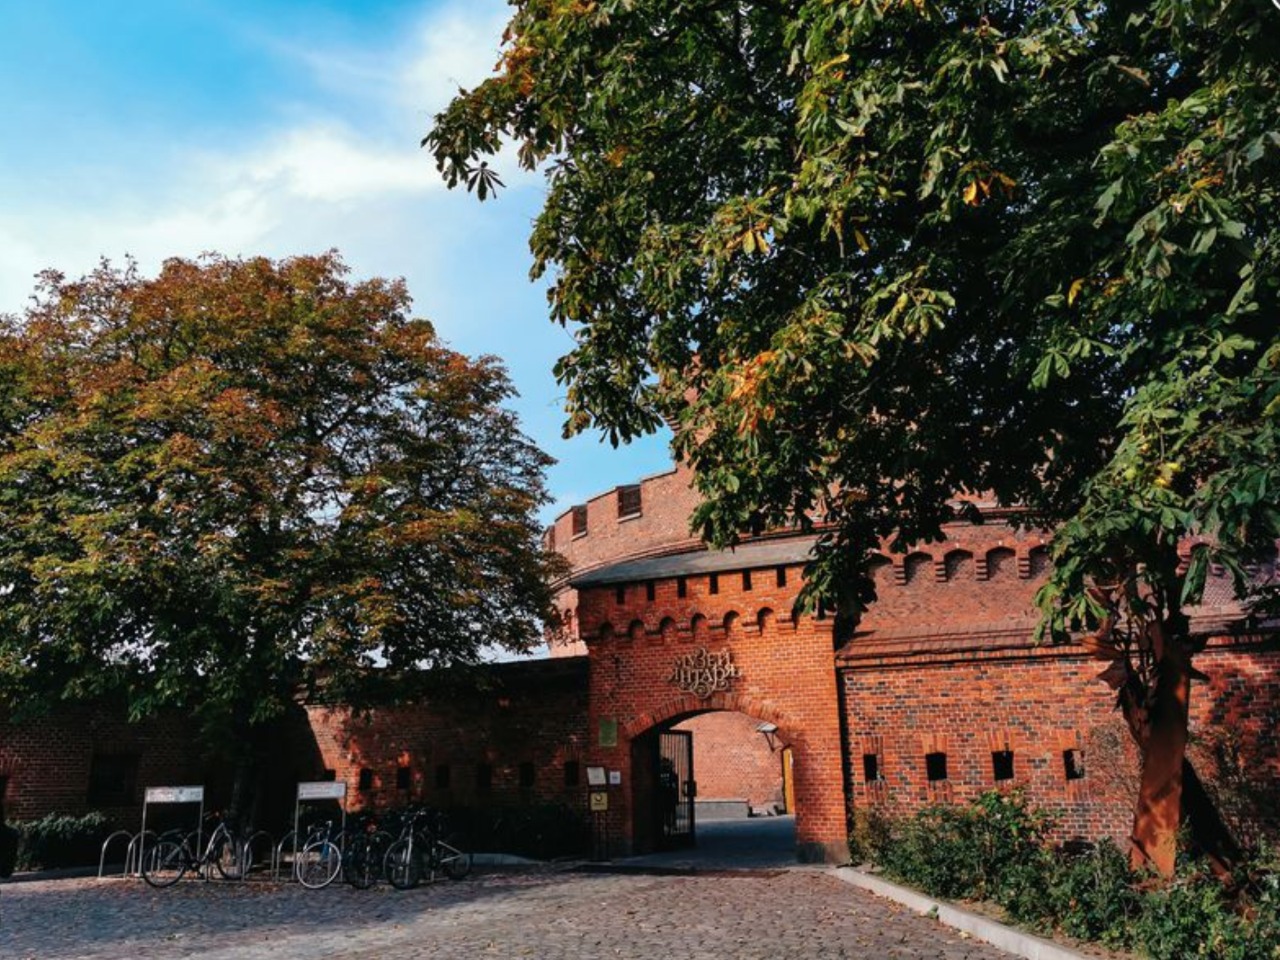 Кёнигсберг: форты и бастионы города-крепости | Цена 981₽, отзывы, описание экскурсии